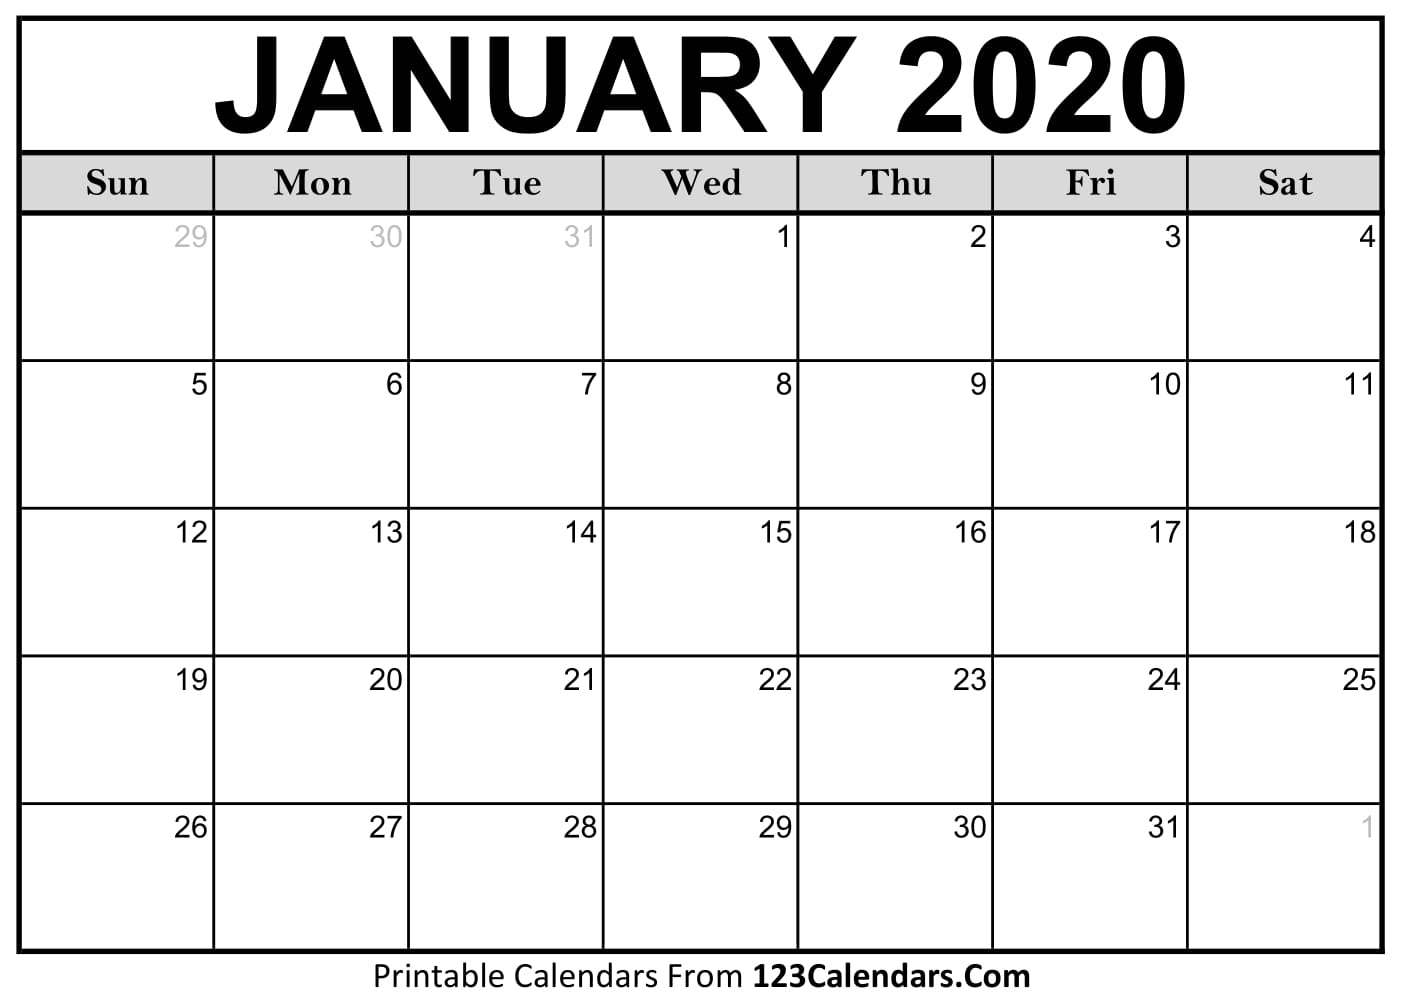 Print Jan 2020 Calendar - Tunu.redmini.co